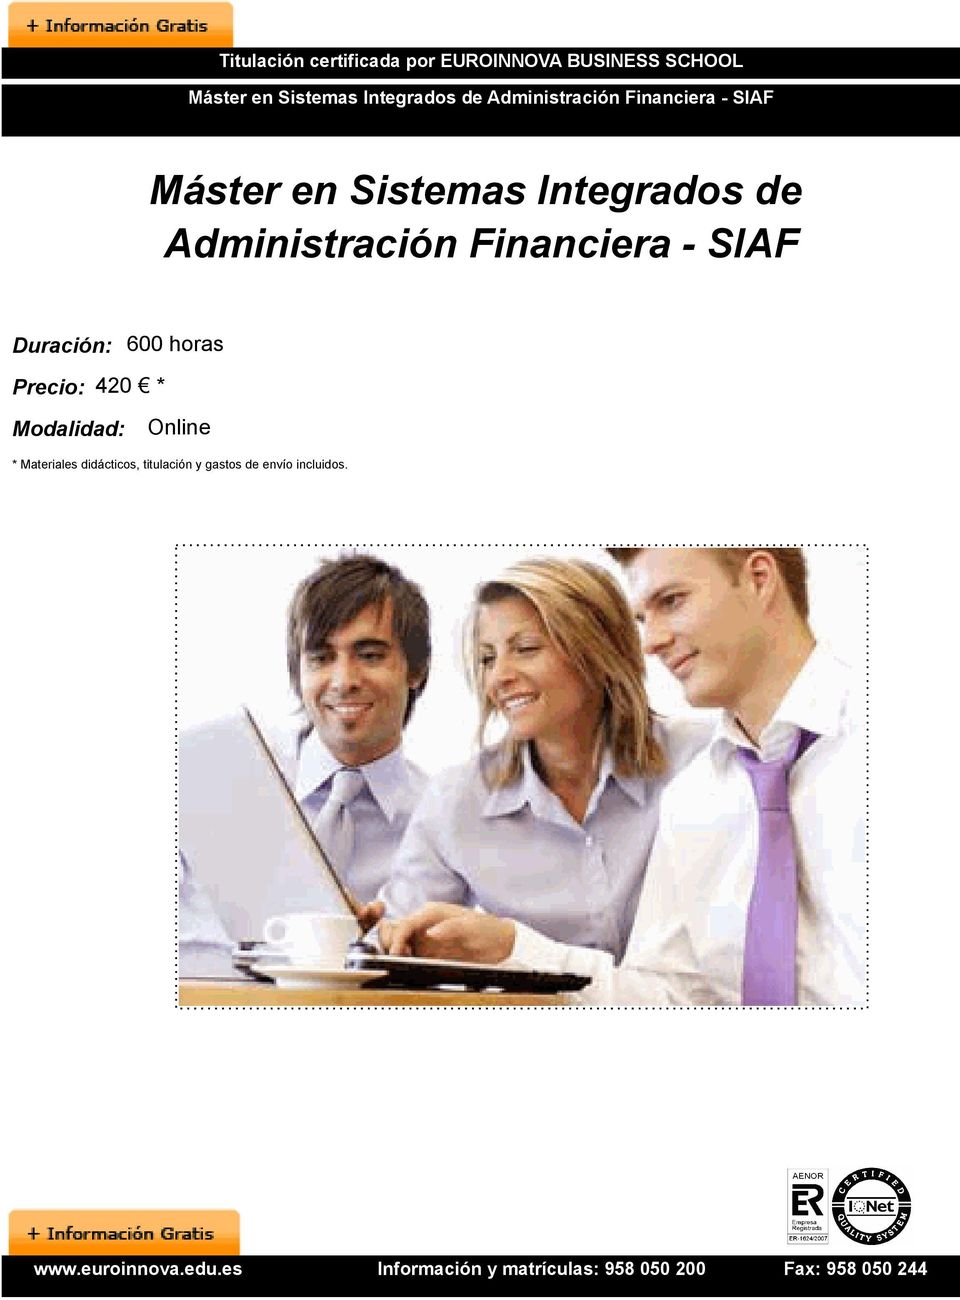 Integrados de Administración Financiera - SIAF Duración: 600 horas Precio: